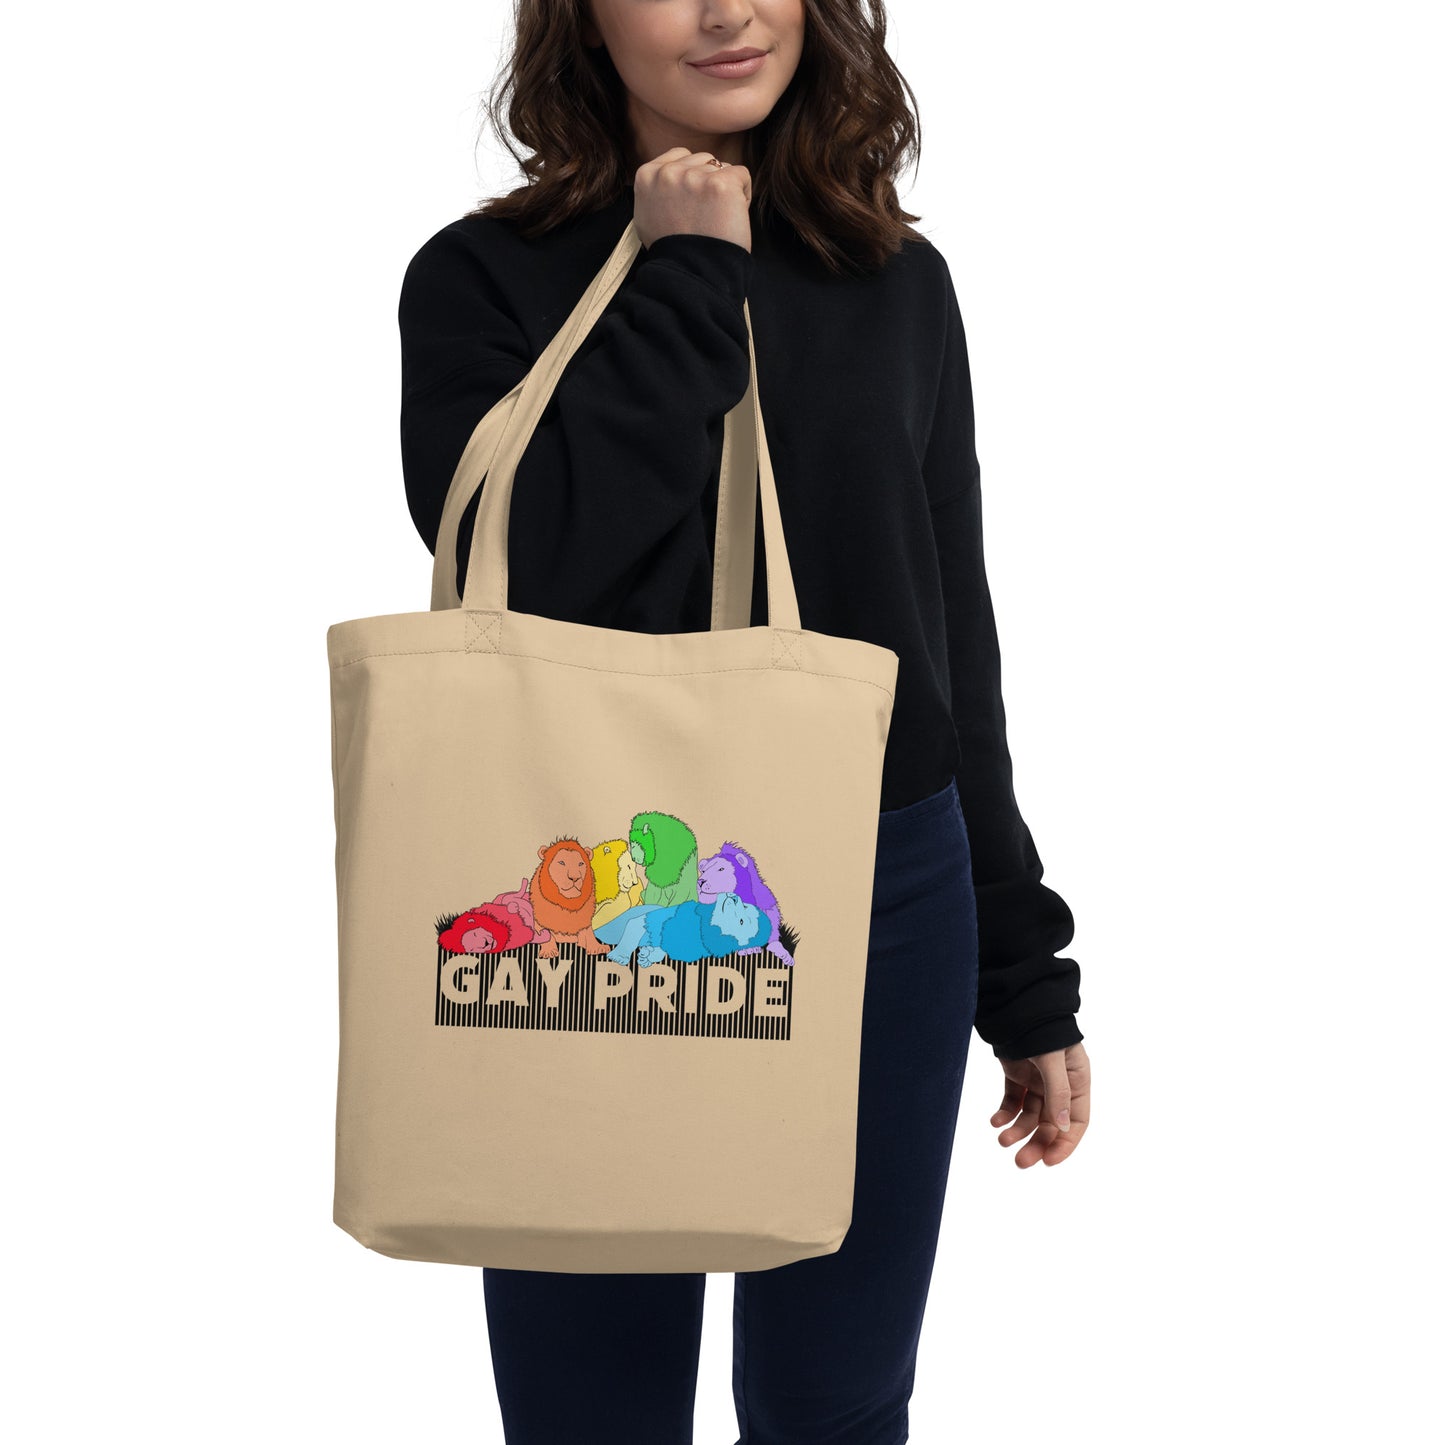 Gay Pride Eco Tote Bag